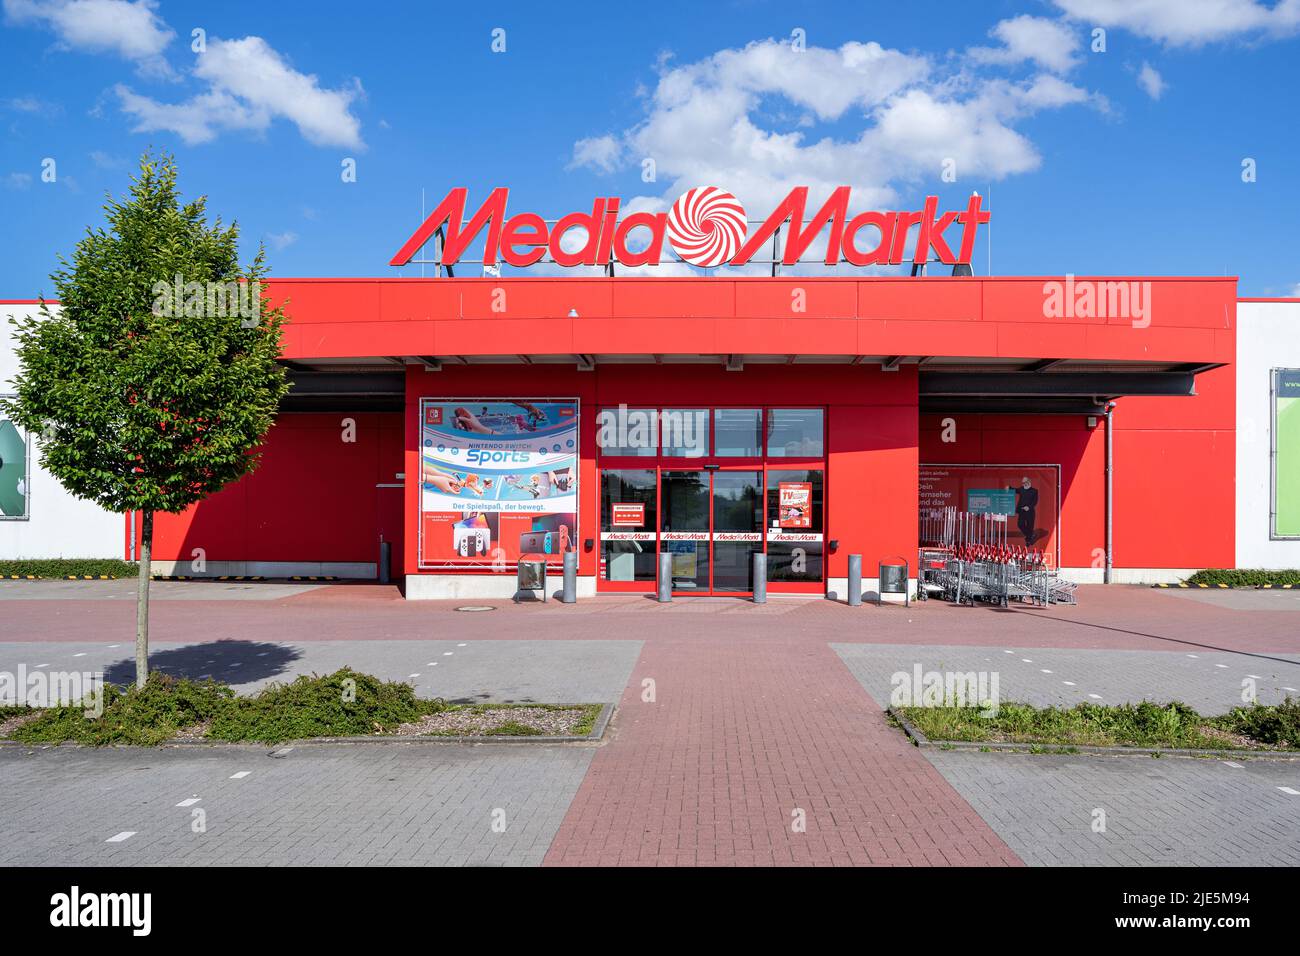 MediaMarkt launches first international brand campaign - RetailDetail EU